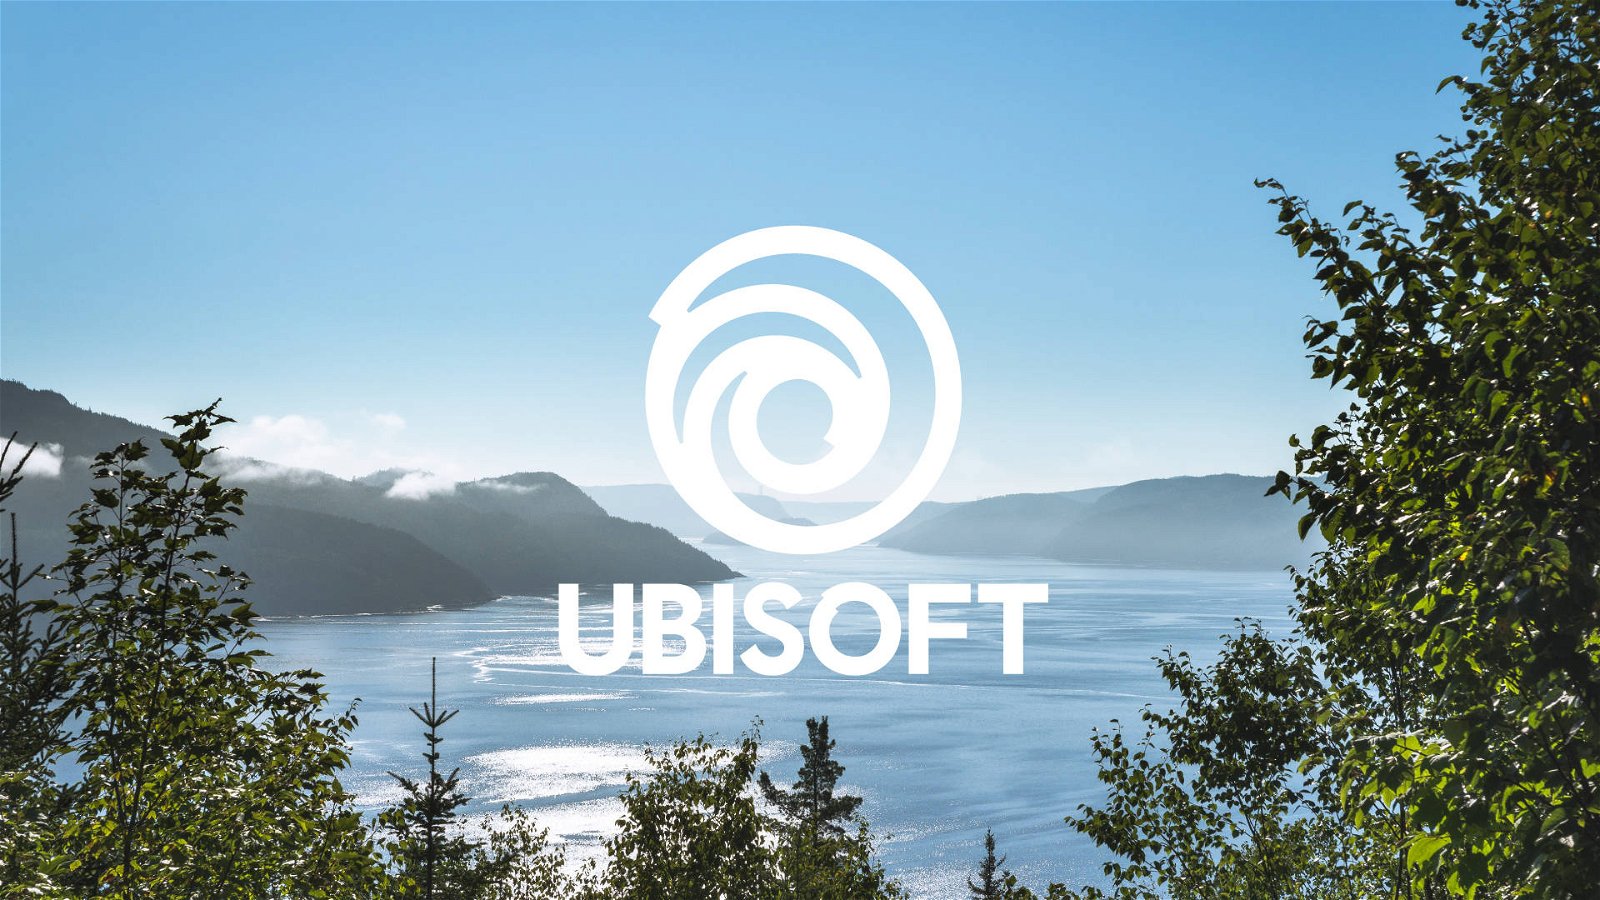 Immagine di Ubisoft Pass Premium: in arrivo un nuovo servizio di abbonamento?